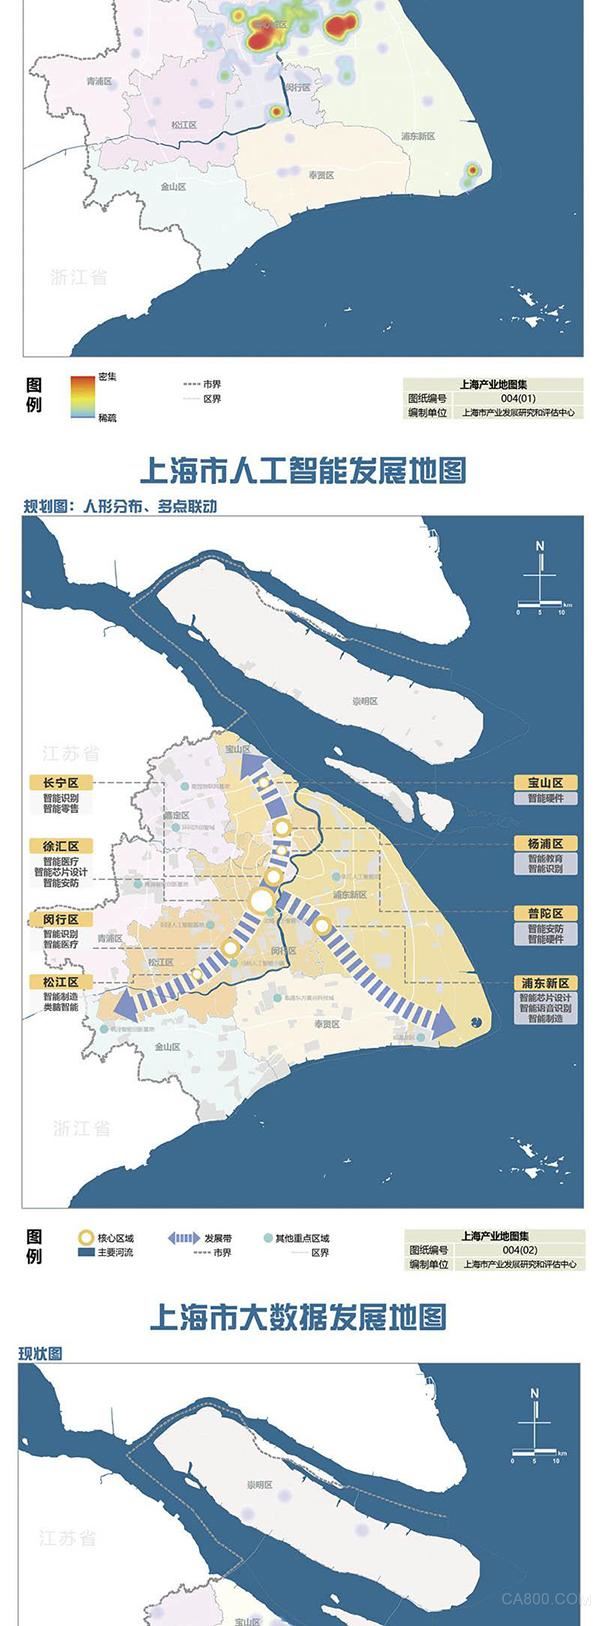 进博会,产业推介会,上海市产业地图